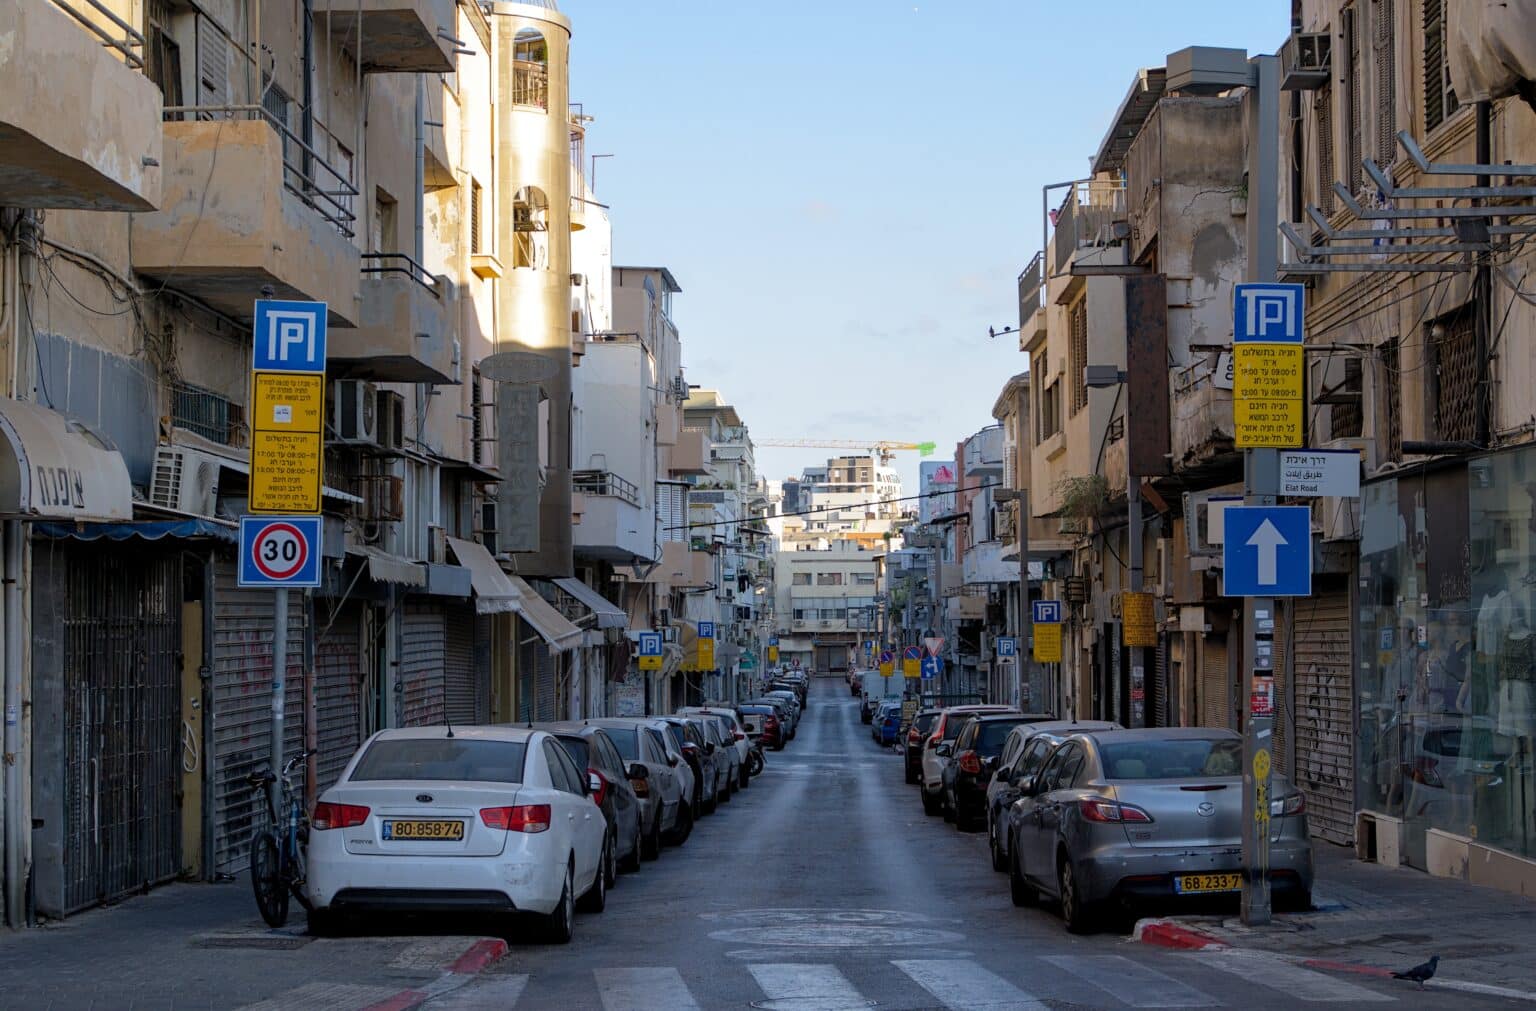 תל אביב מעלה תעריפים ומבטלת את החניה בחינם לתושבים ברחבי העיר